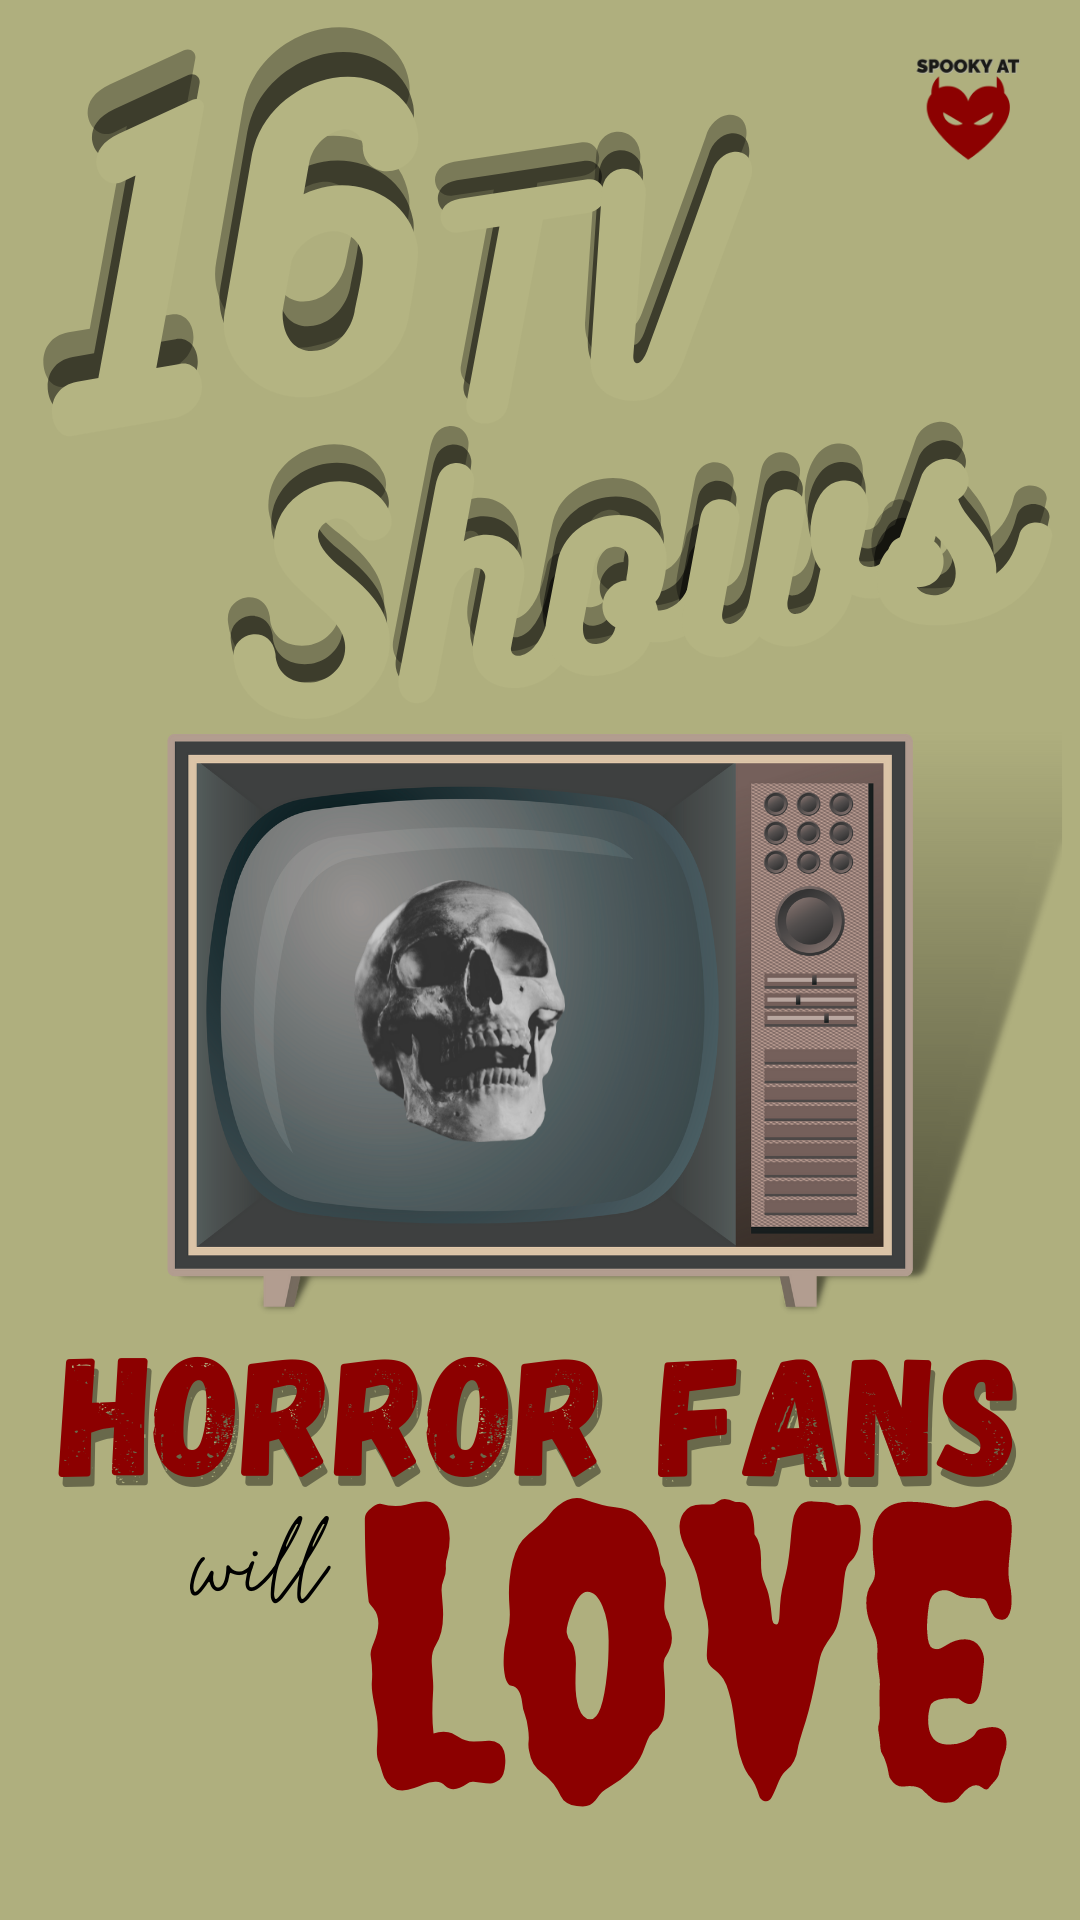 16 tv shows for horror fans Pinterest pin